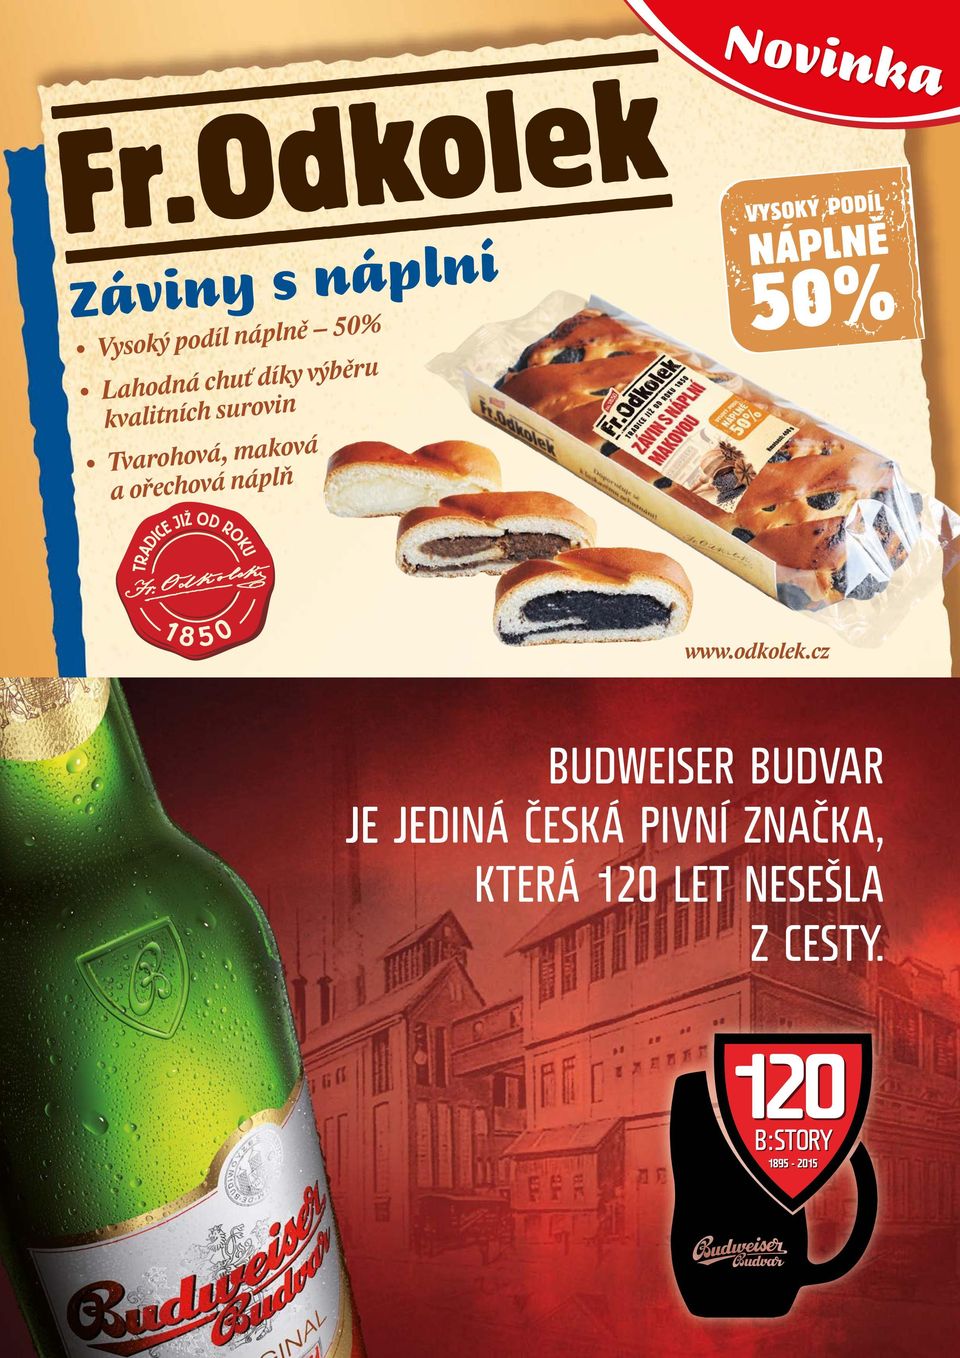 Tvarohová, maková a ořechová náplň www.odkolek.